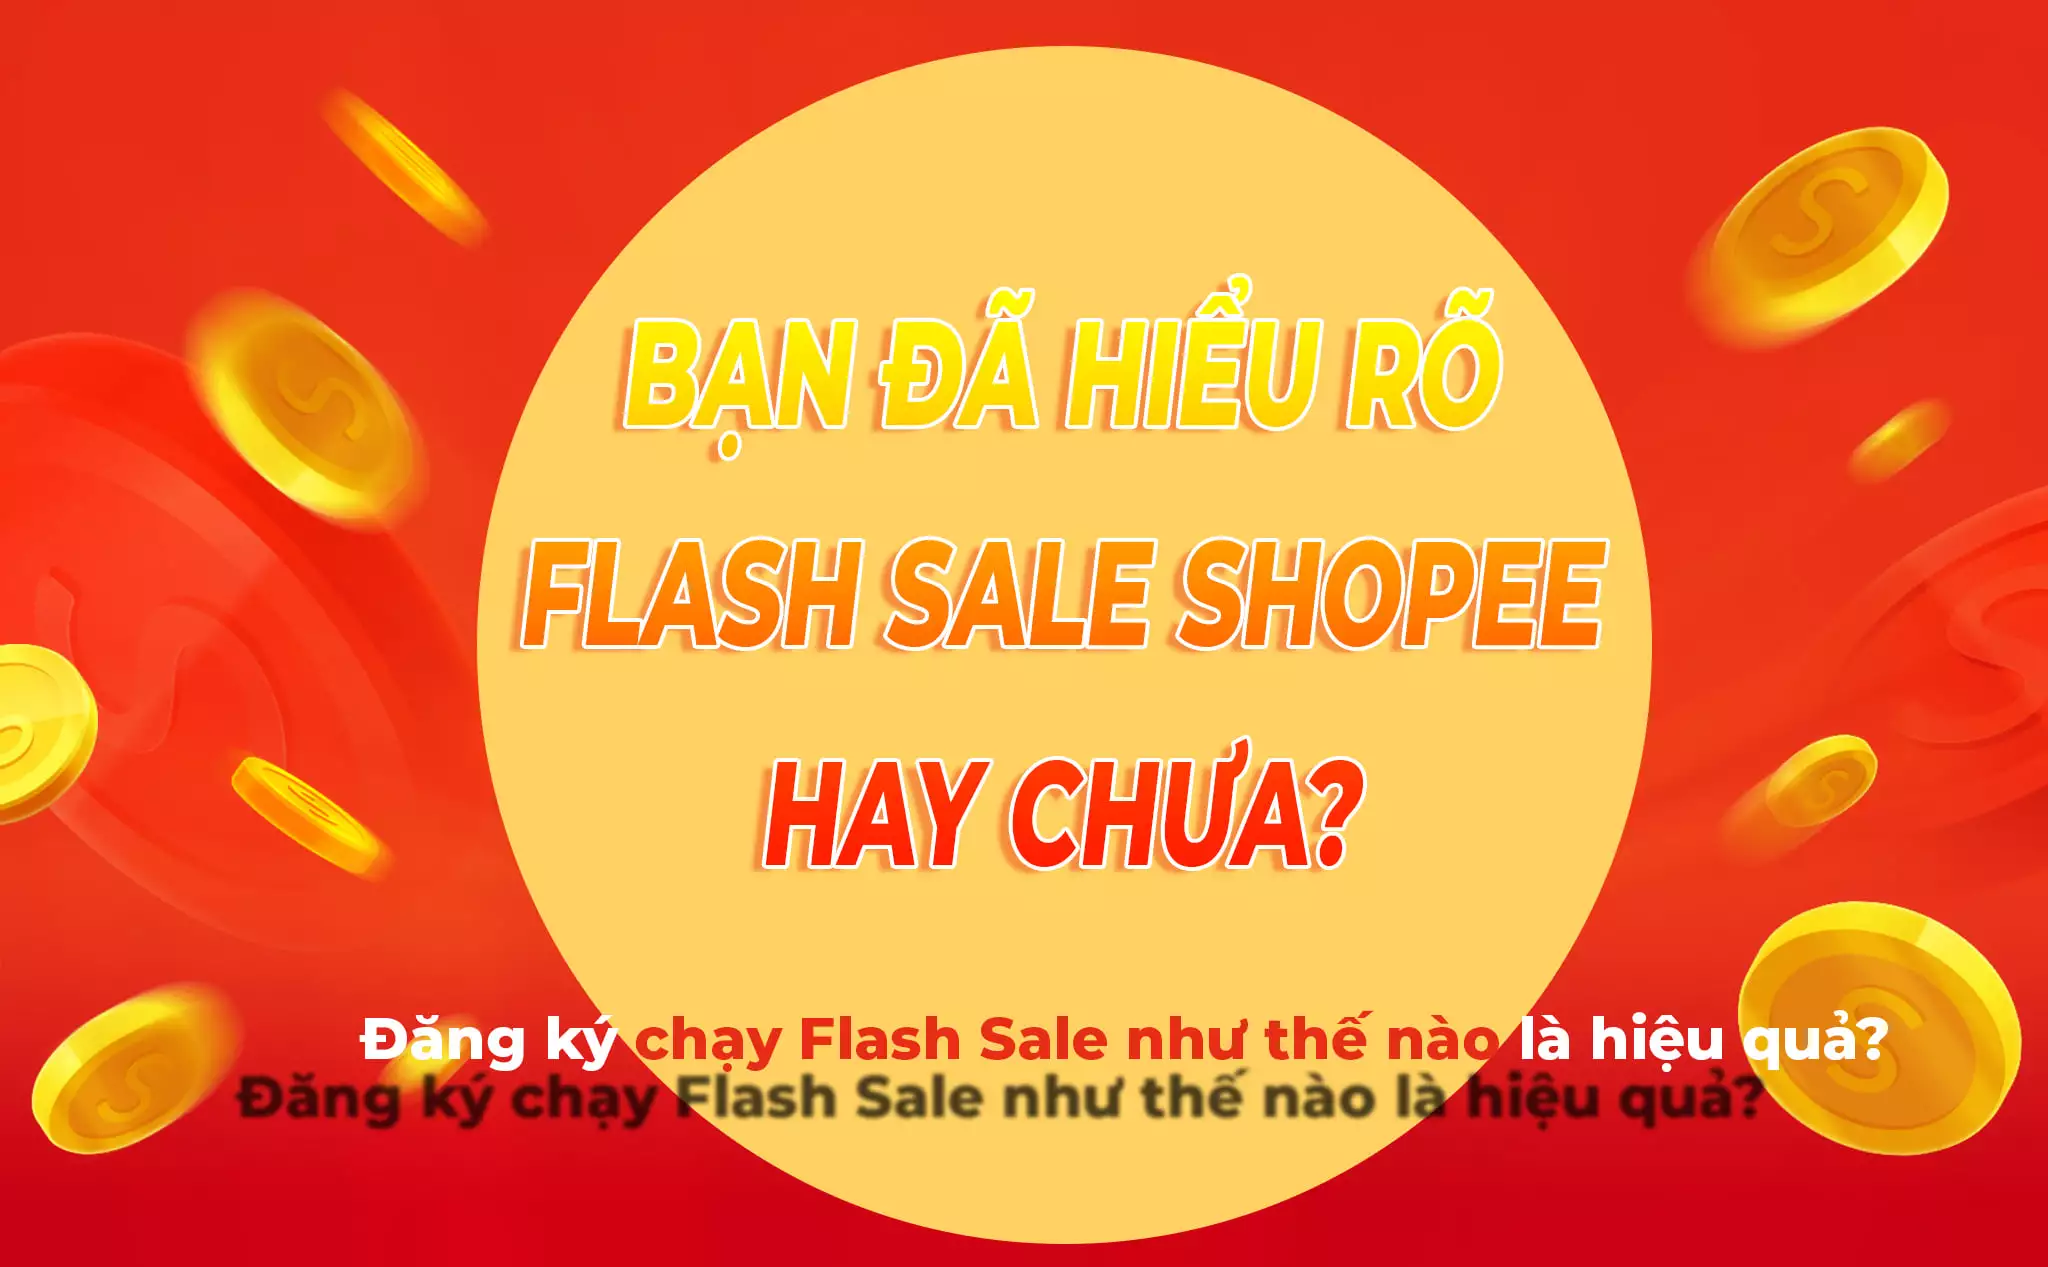 Flash sale shopee là gì? Sử dụng hiệu quả khi kinh doanh shopee